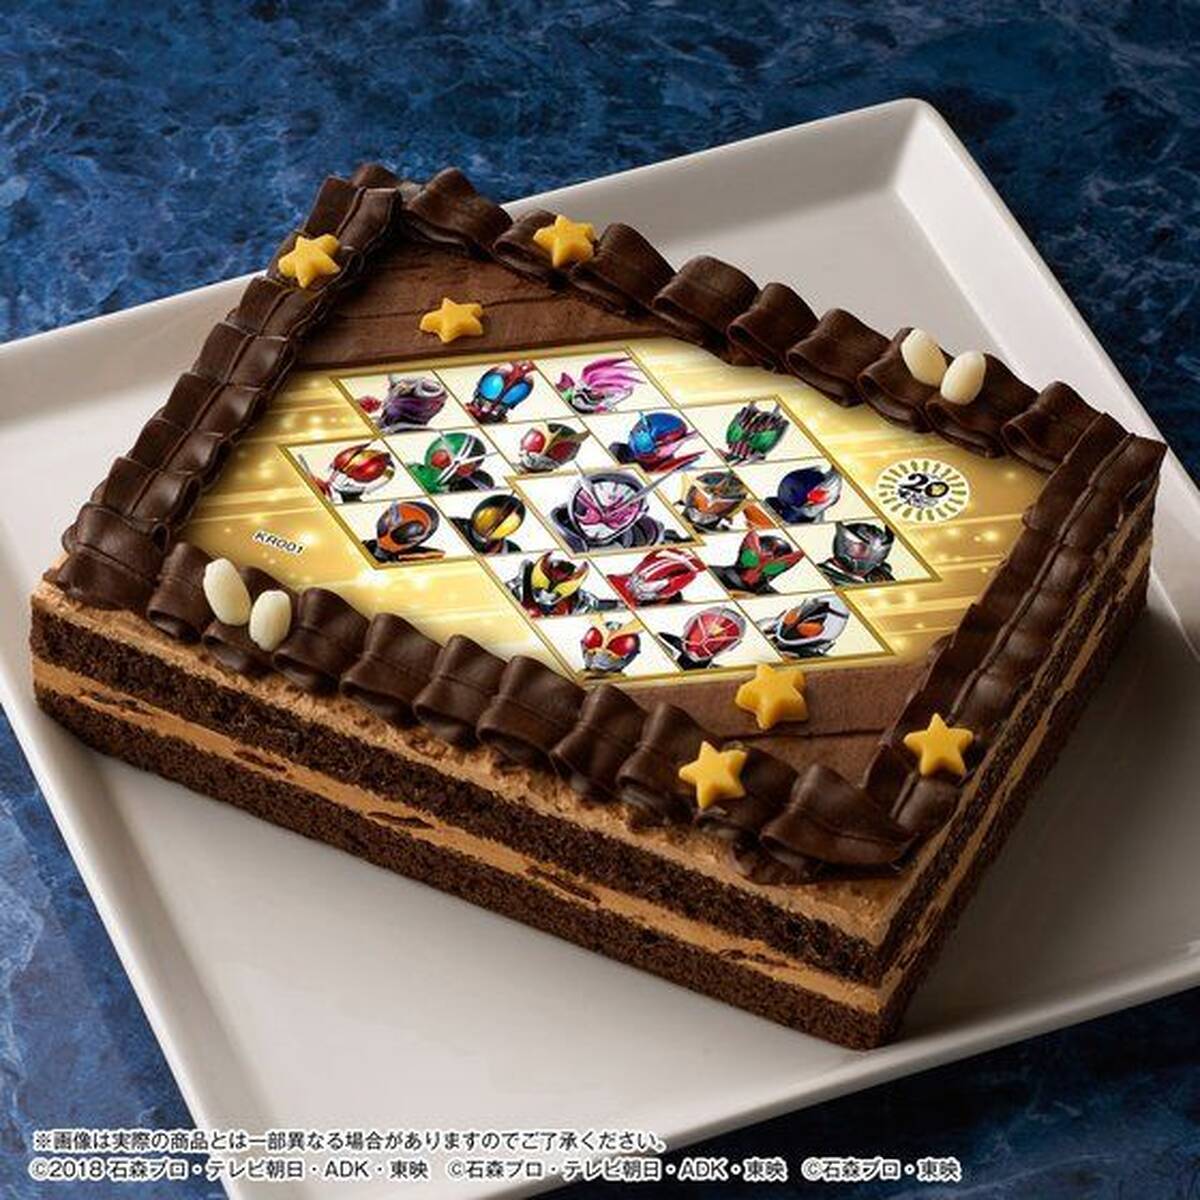 平成仮面ライダー作品をお祝いする 平成仮面ライダー全員がプリントされた特別仕様のケーキが登場 アキバ総研